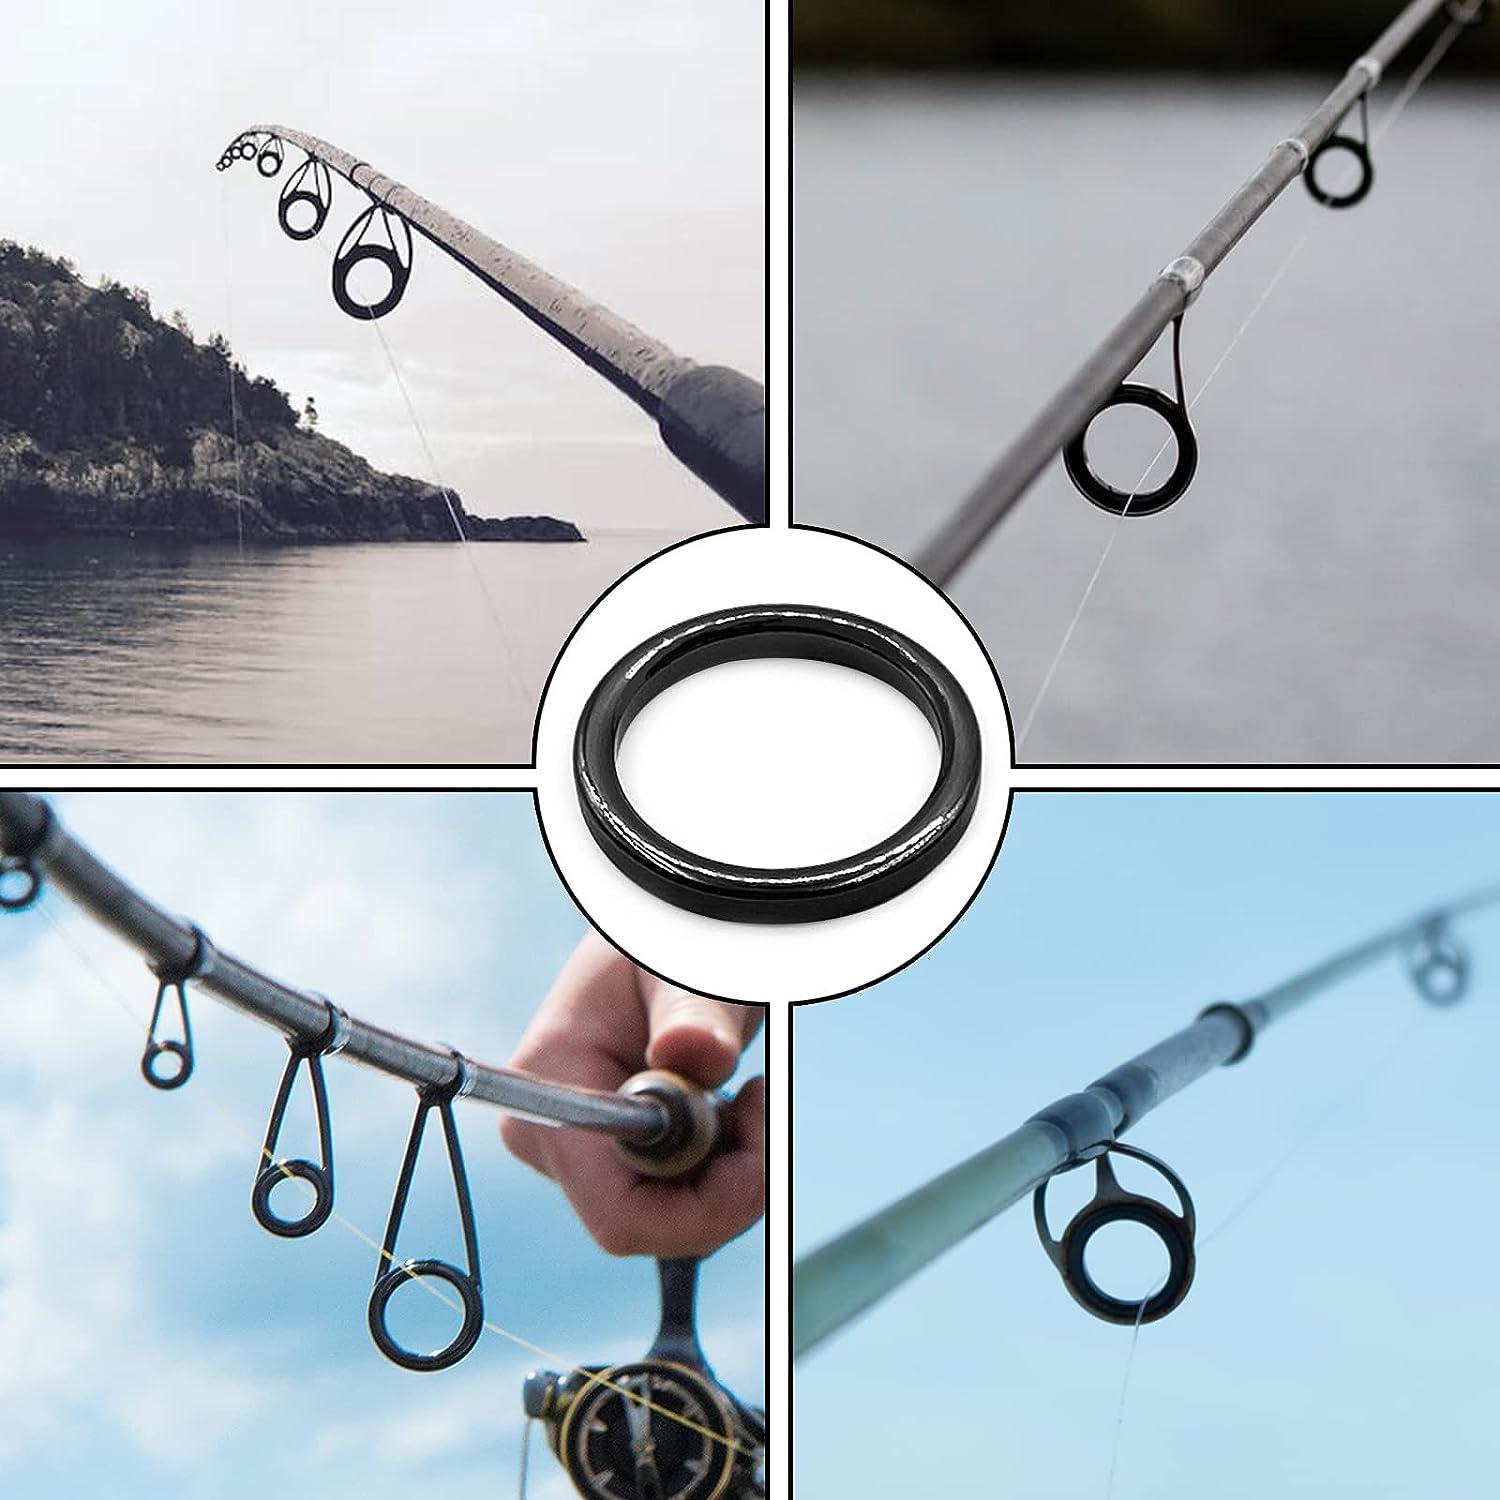 Fishing Rod Tip Repair Kit, Anti Tangled Fishing Rod Guides Set 5 Sizes  10pcs Stainless Steel Frame For Seawater